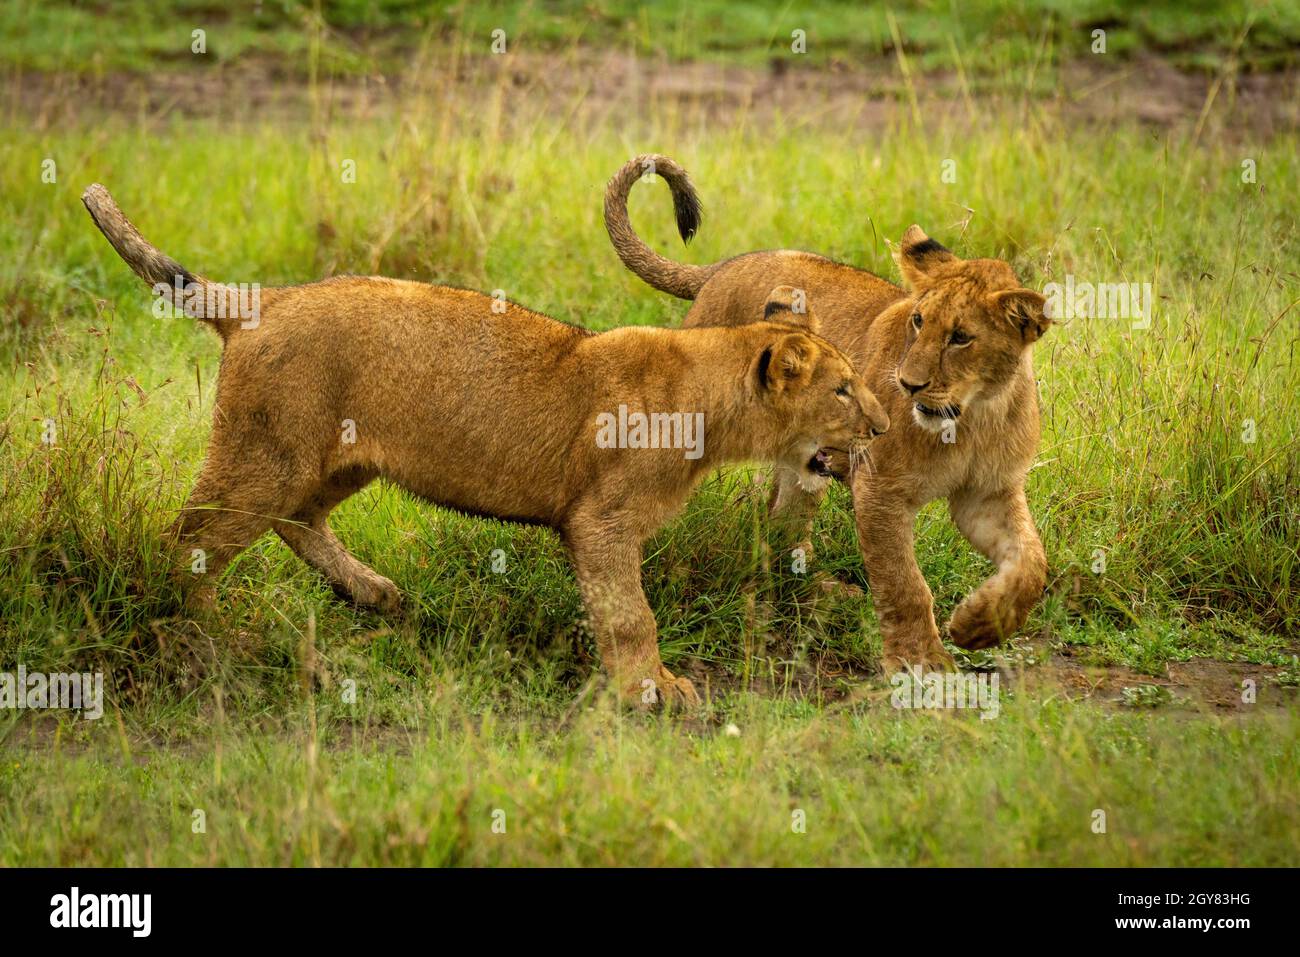 Dos cachorros de león jugar combates en hierba Foto de stock